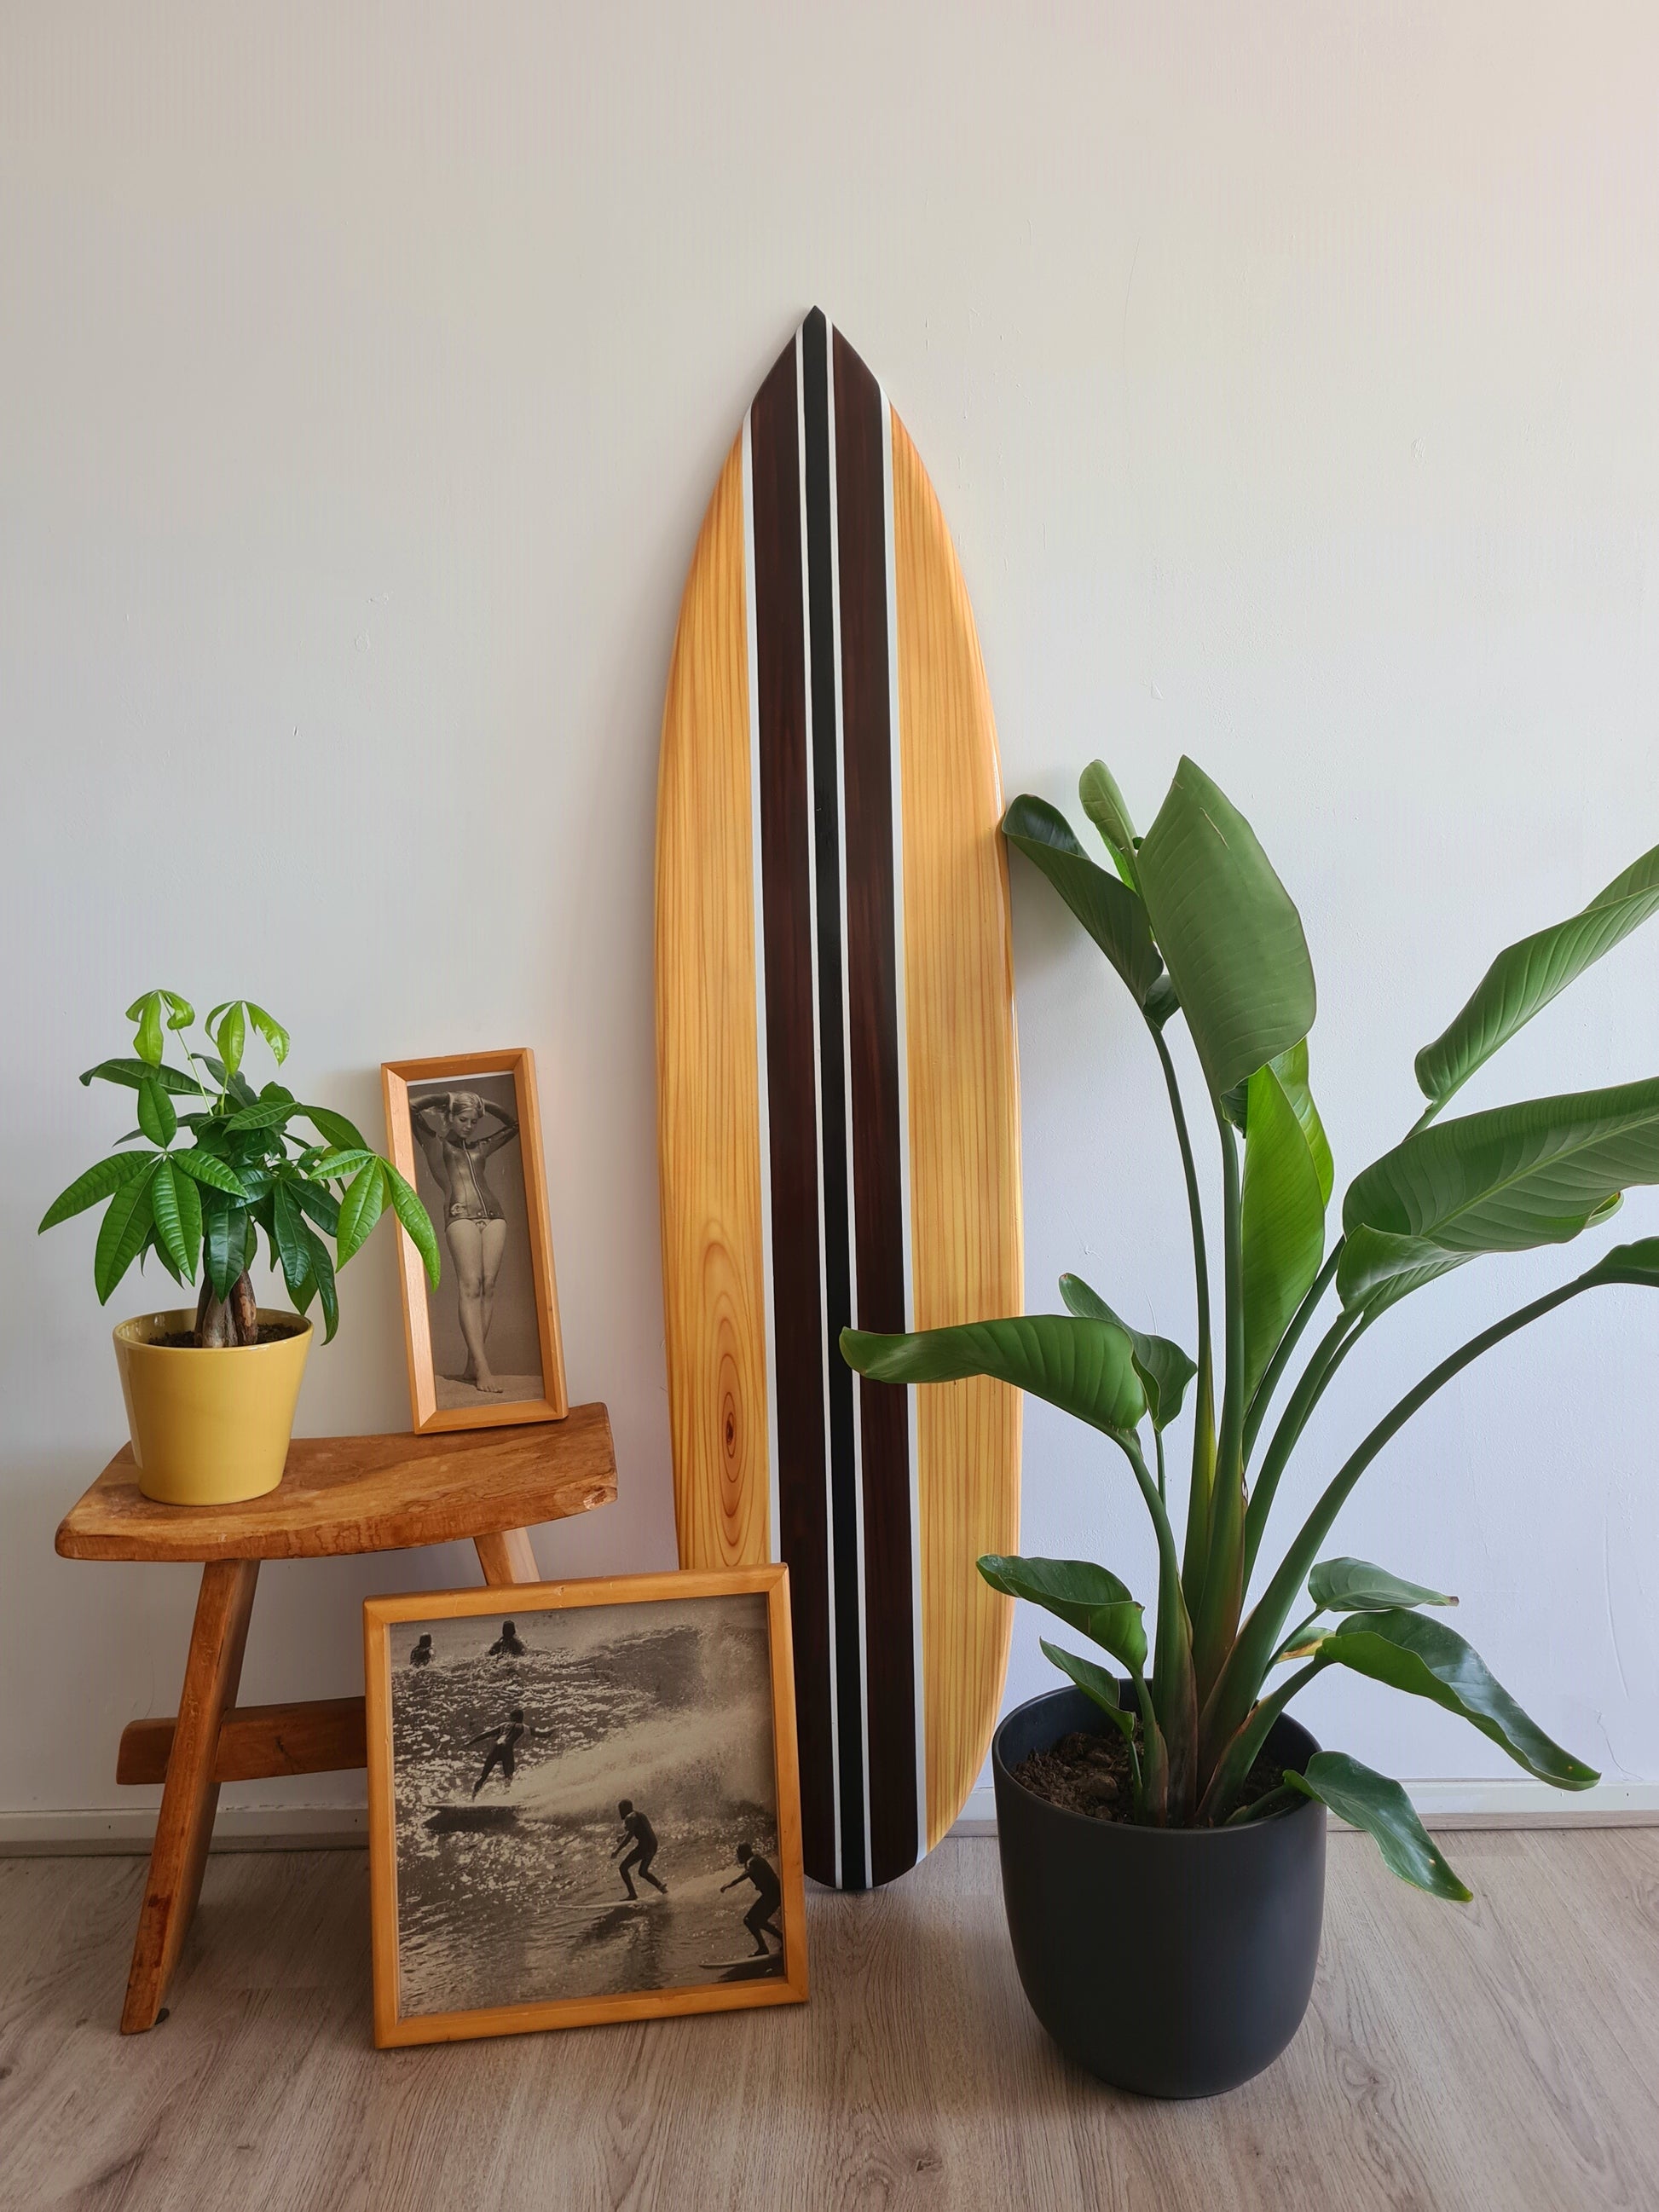 Tabla de surf de madera, decoración decorativa de pared para el